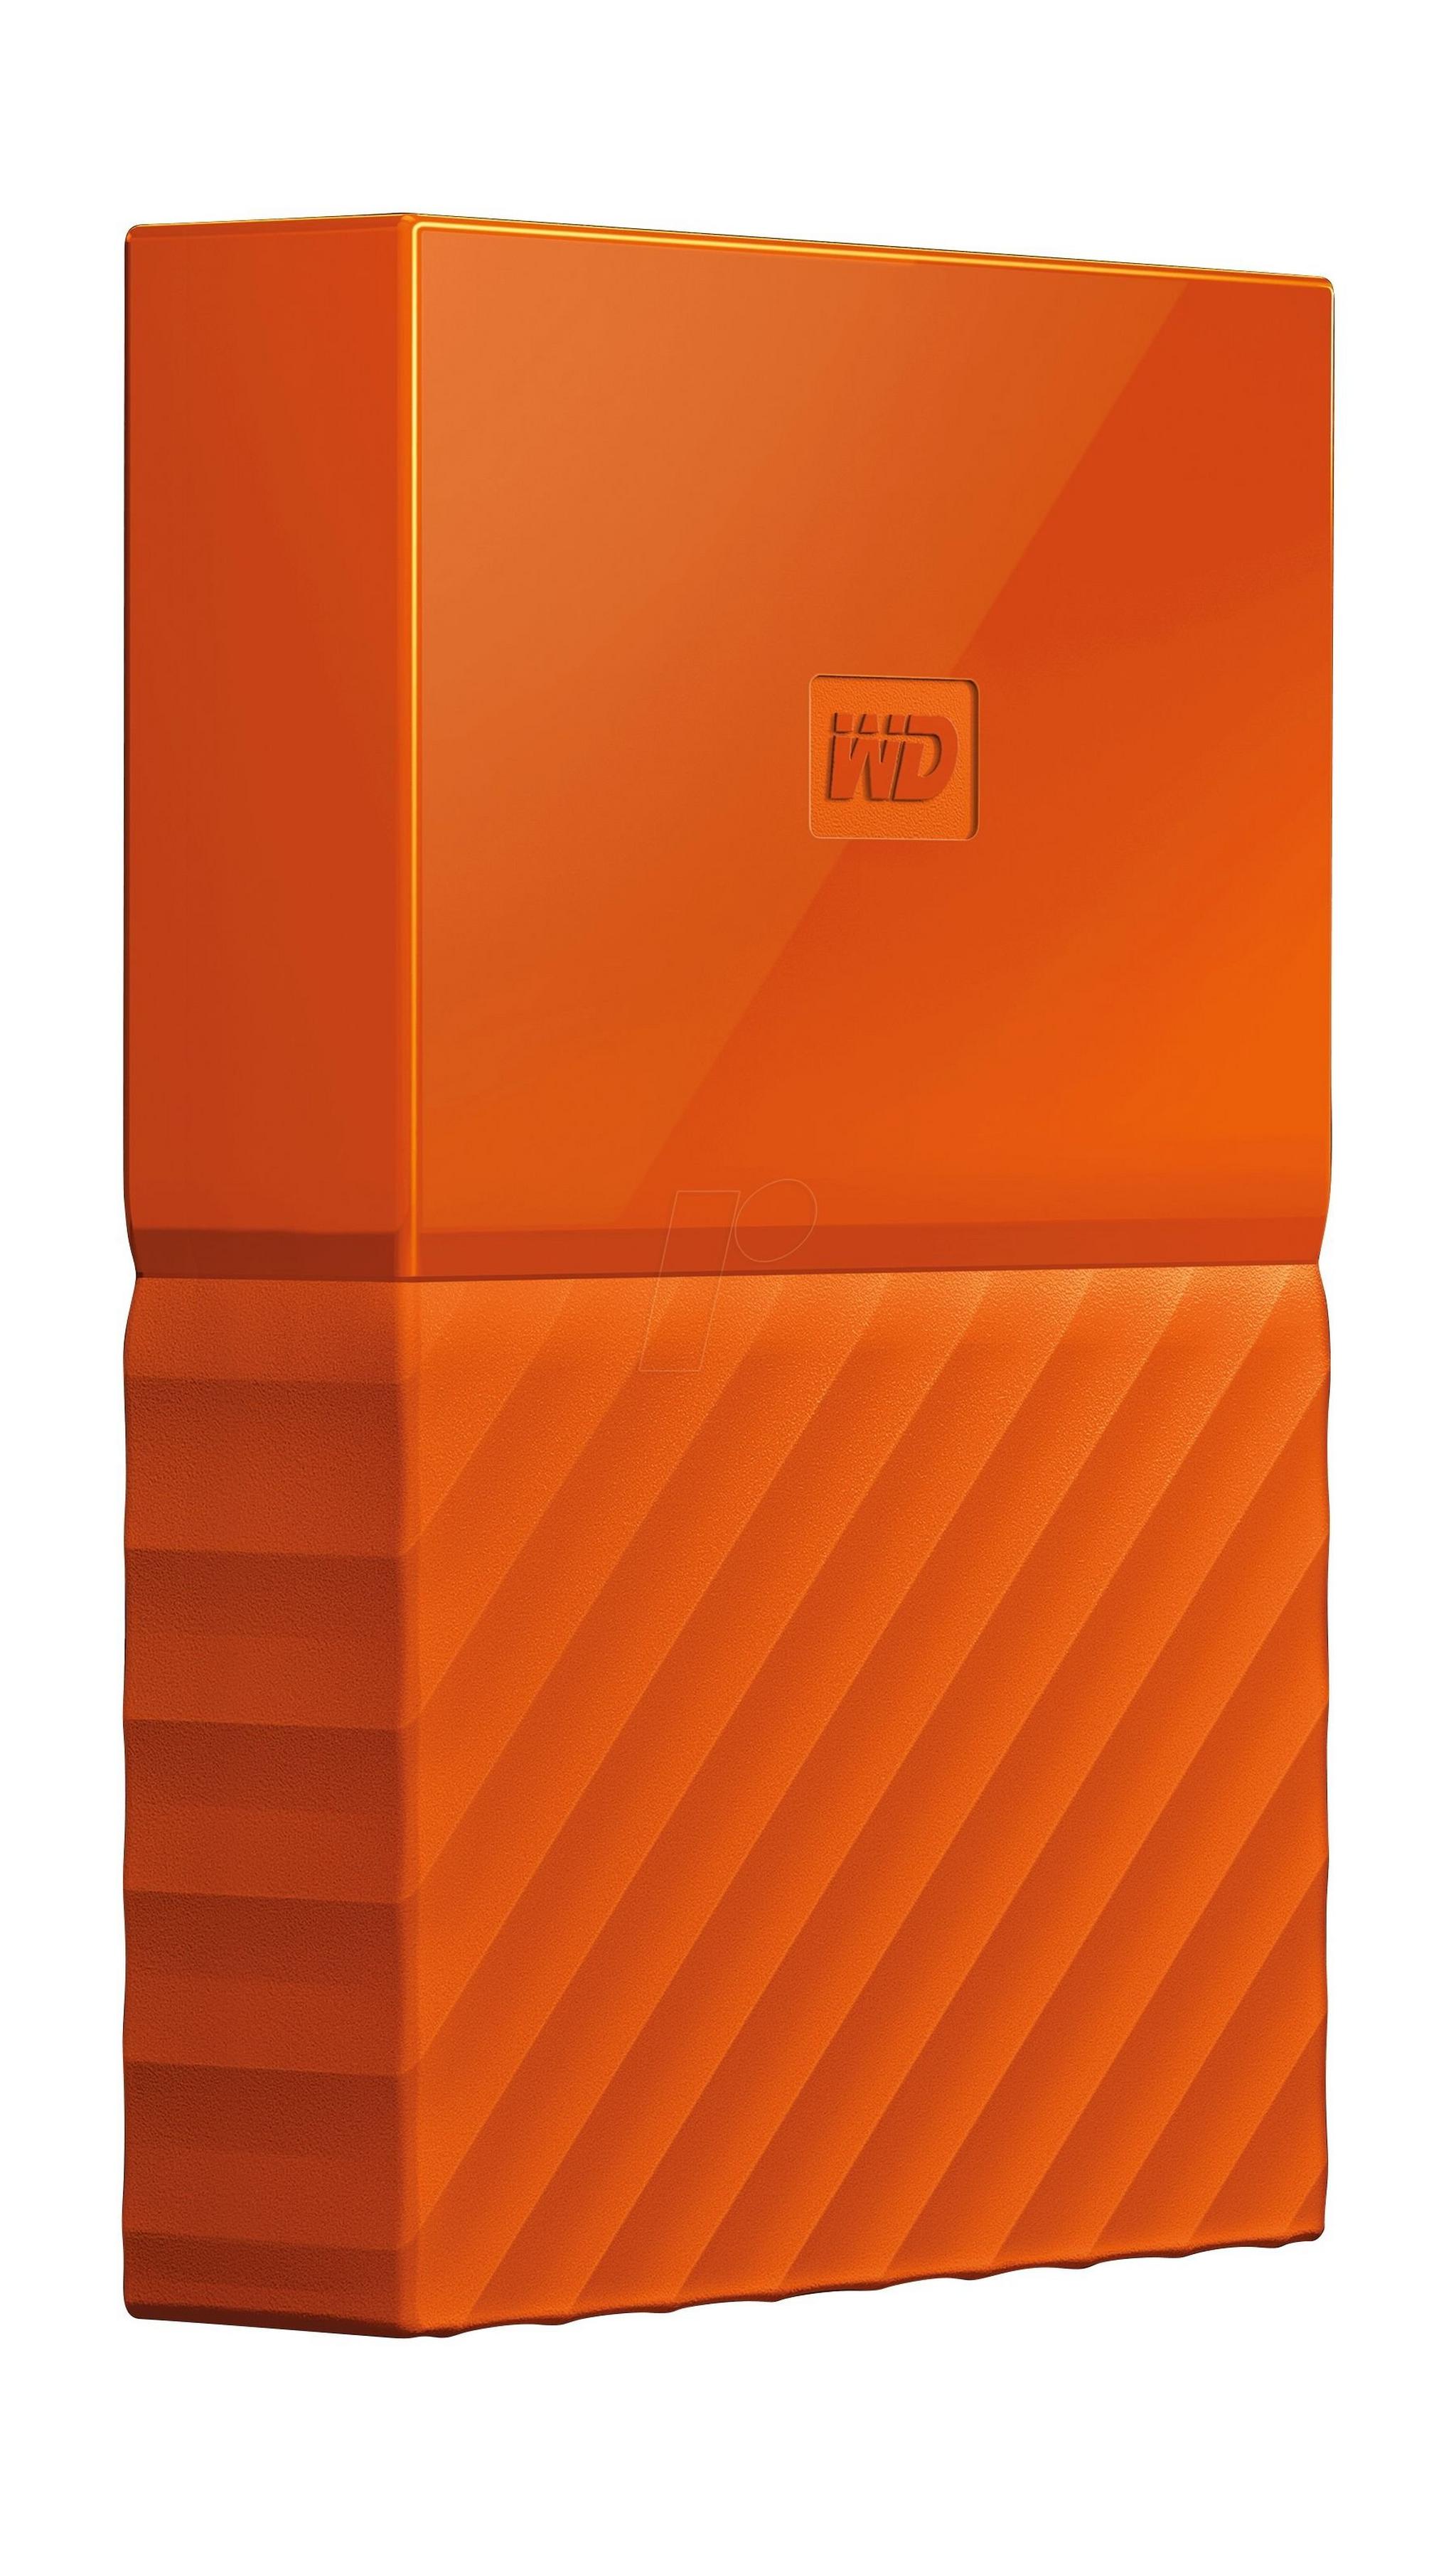 WD 1TB My Passport USB 3.0 External Hard Drive - Orange